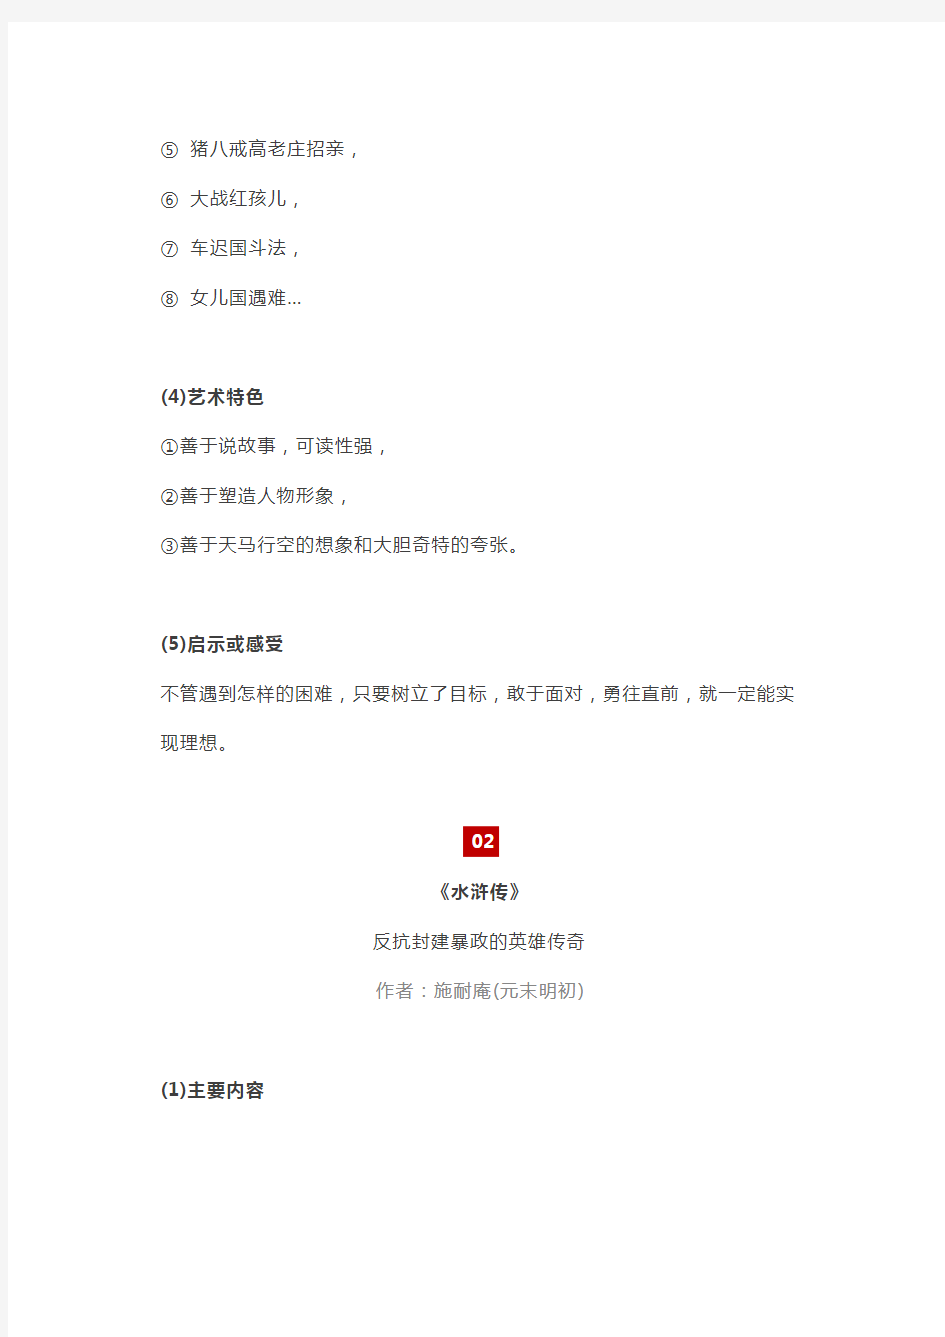 初中语文考纲中的6本名著导读资料